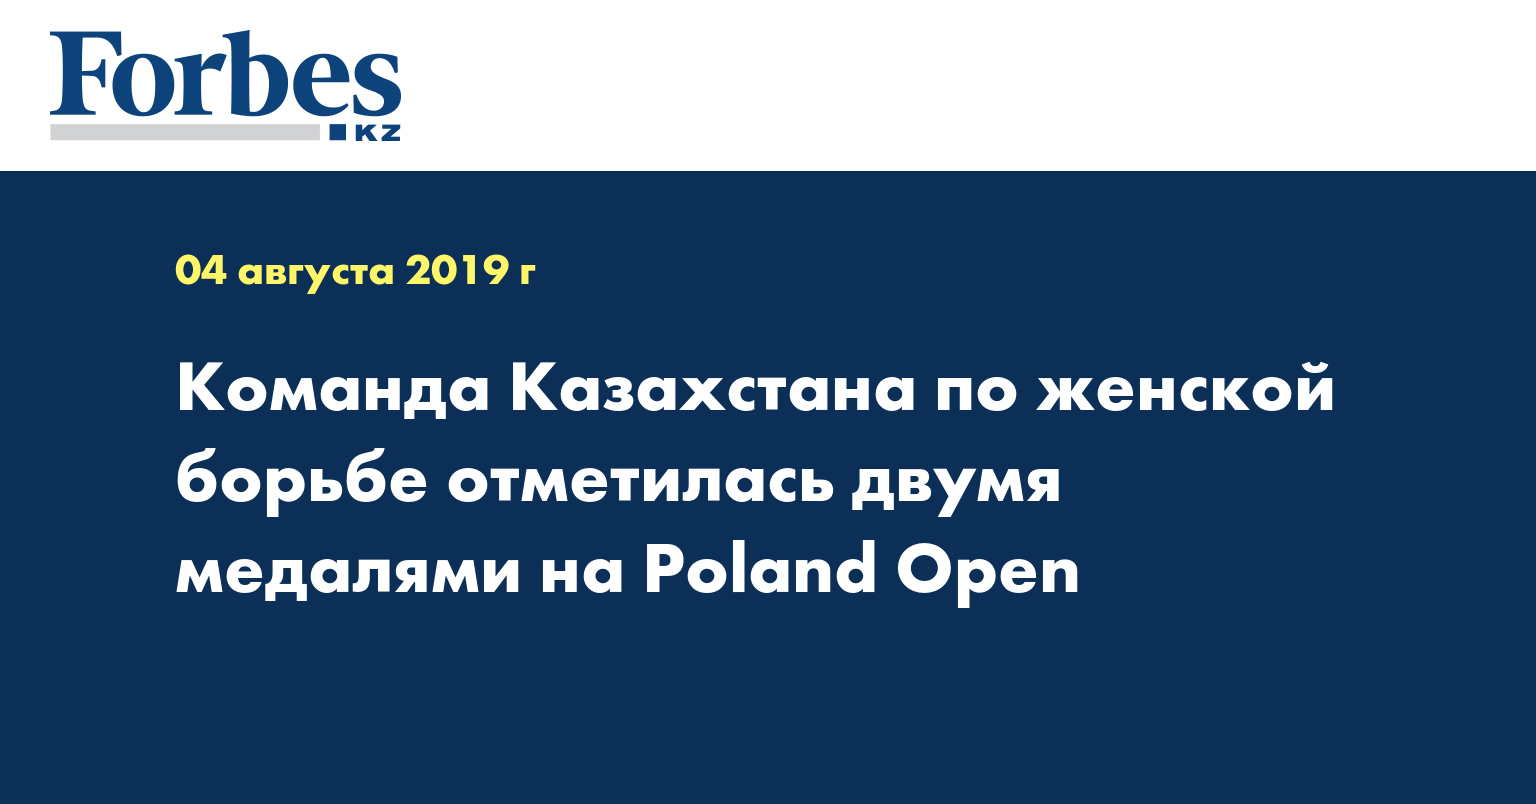 Команда Казахстана по женской борьбе отметилась двумя медалями на Poland Open